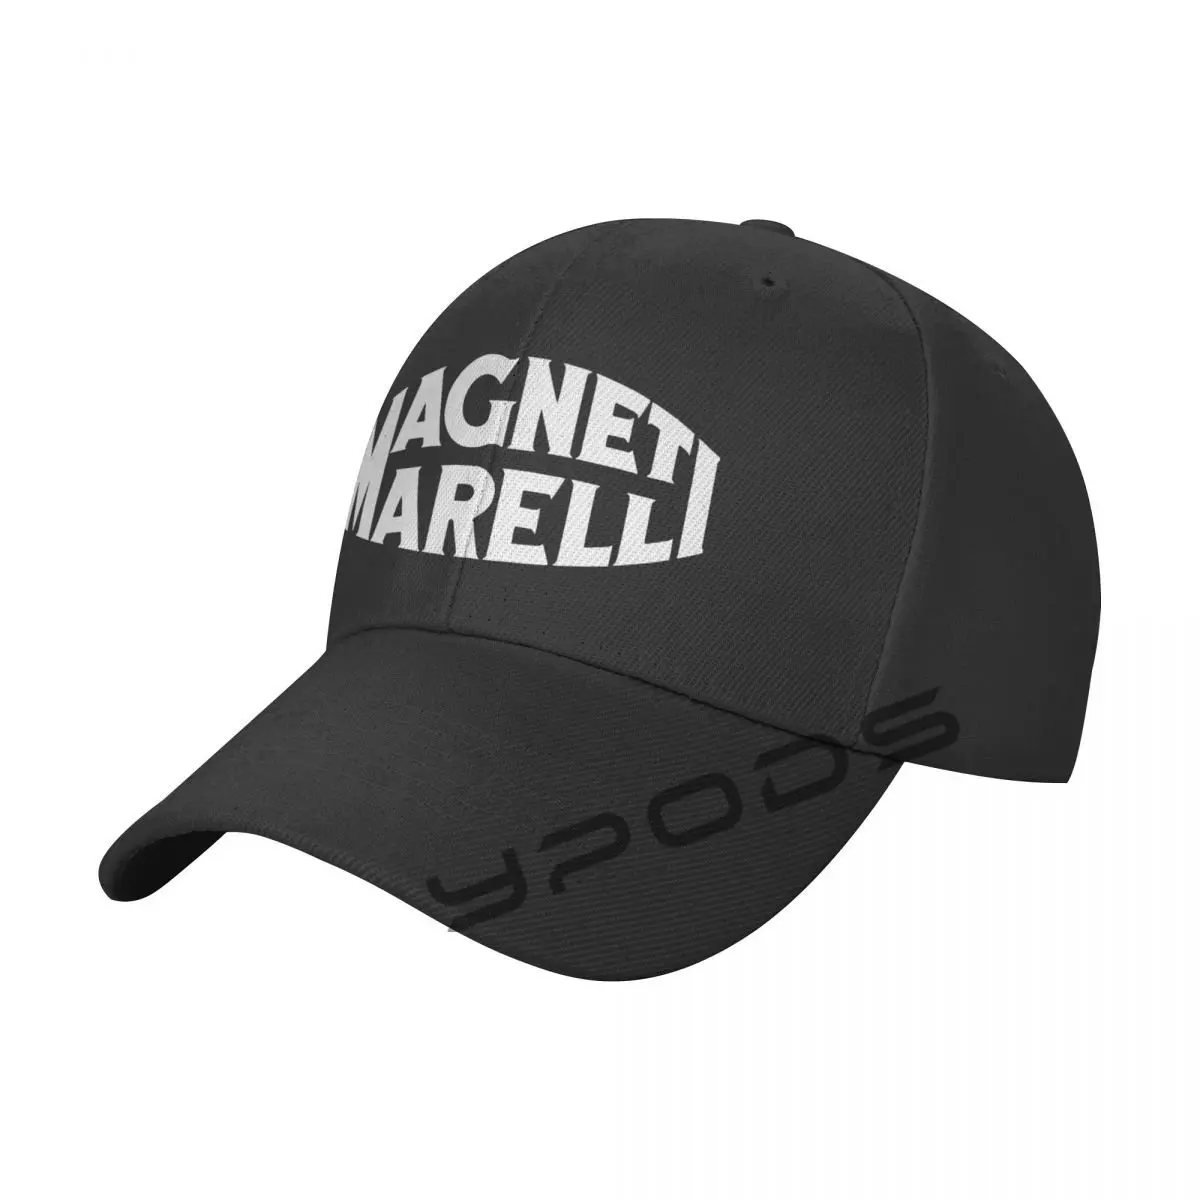 

Magneti Marelli Baseball Cap For Women Men Snapback Hat Casquette Femme Streetwear Sun Visor